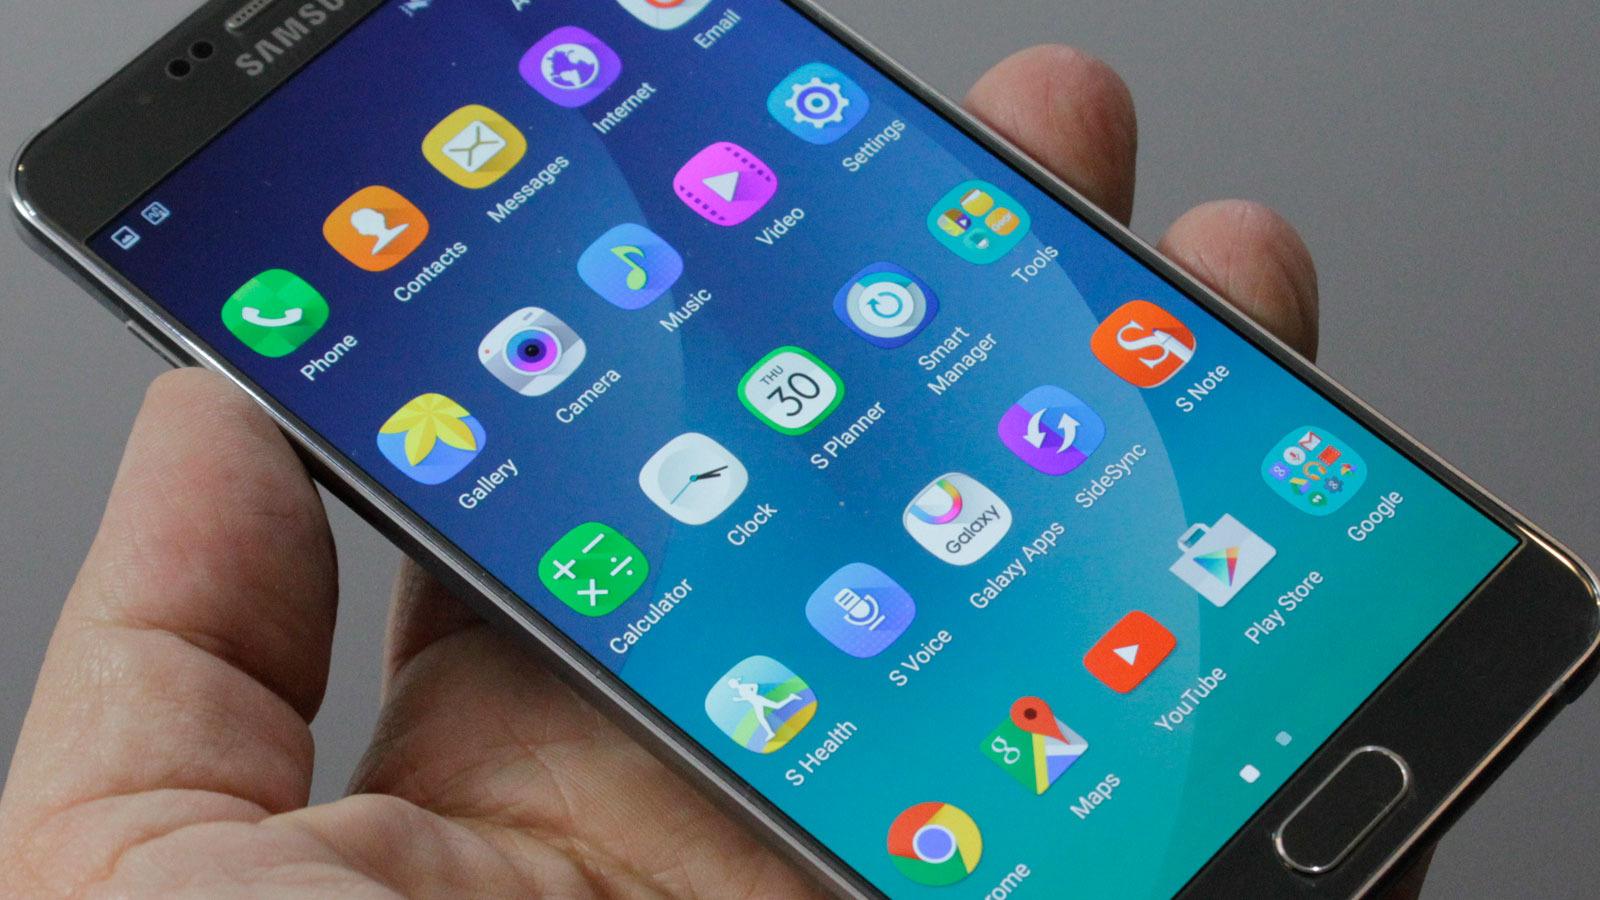 Galaxy Note 5 og S6 Edge+ har fått nye og rundere ikoner uten den hvite rammen vi kjenner fra Galaxy S6. I form minner de om ikonene på Nokia Belle, tidligere Symbian Belle. (Foto: Espen Irwing Swang, Tek.no)